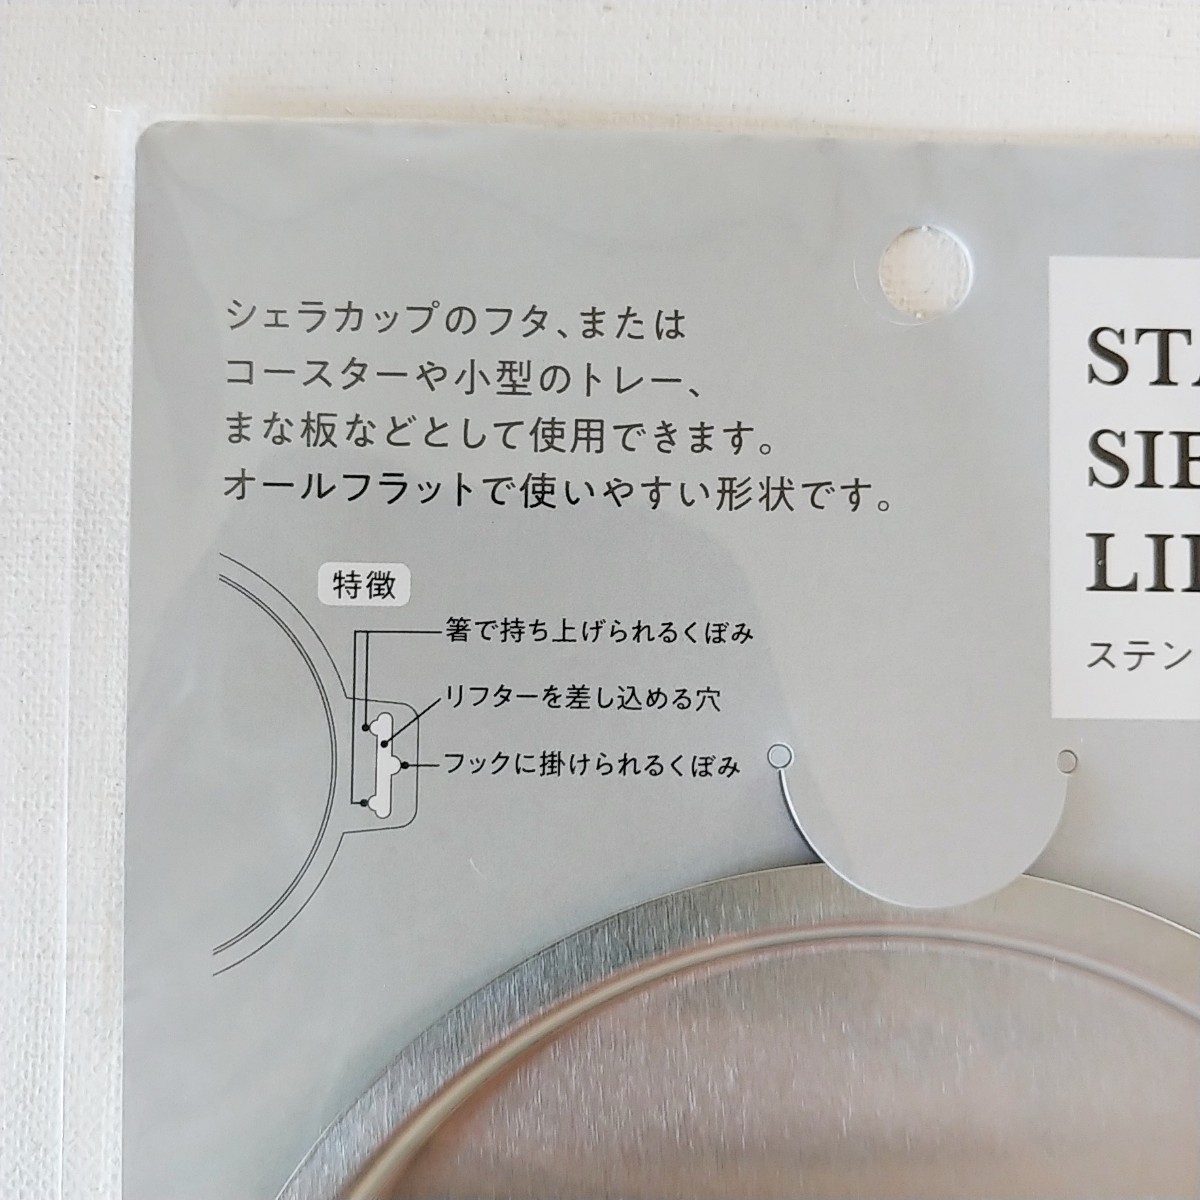 シェラカップリッド 蓋 日本製 セット コースター まな板にも ソロキャンプ アウトドア